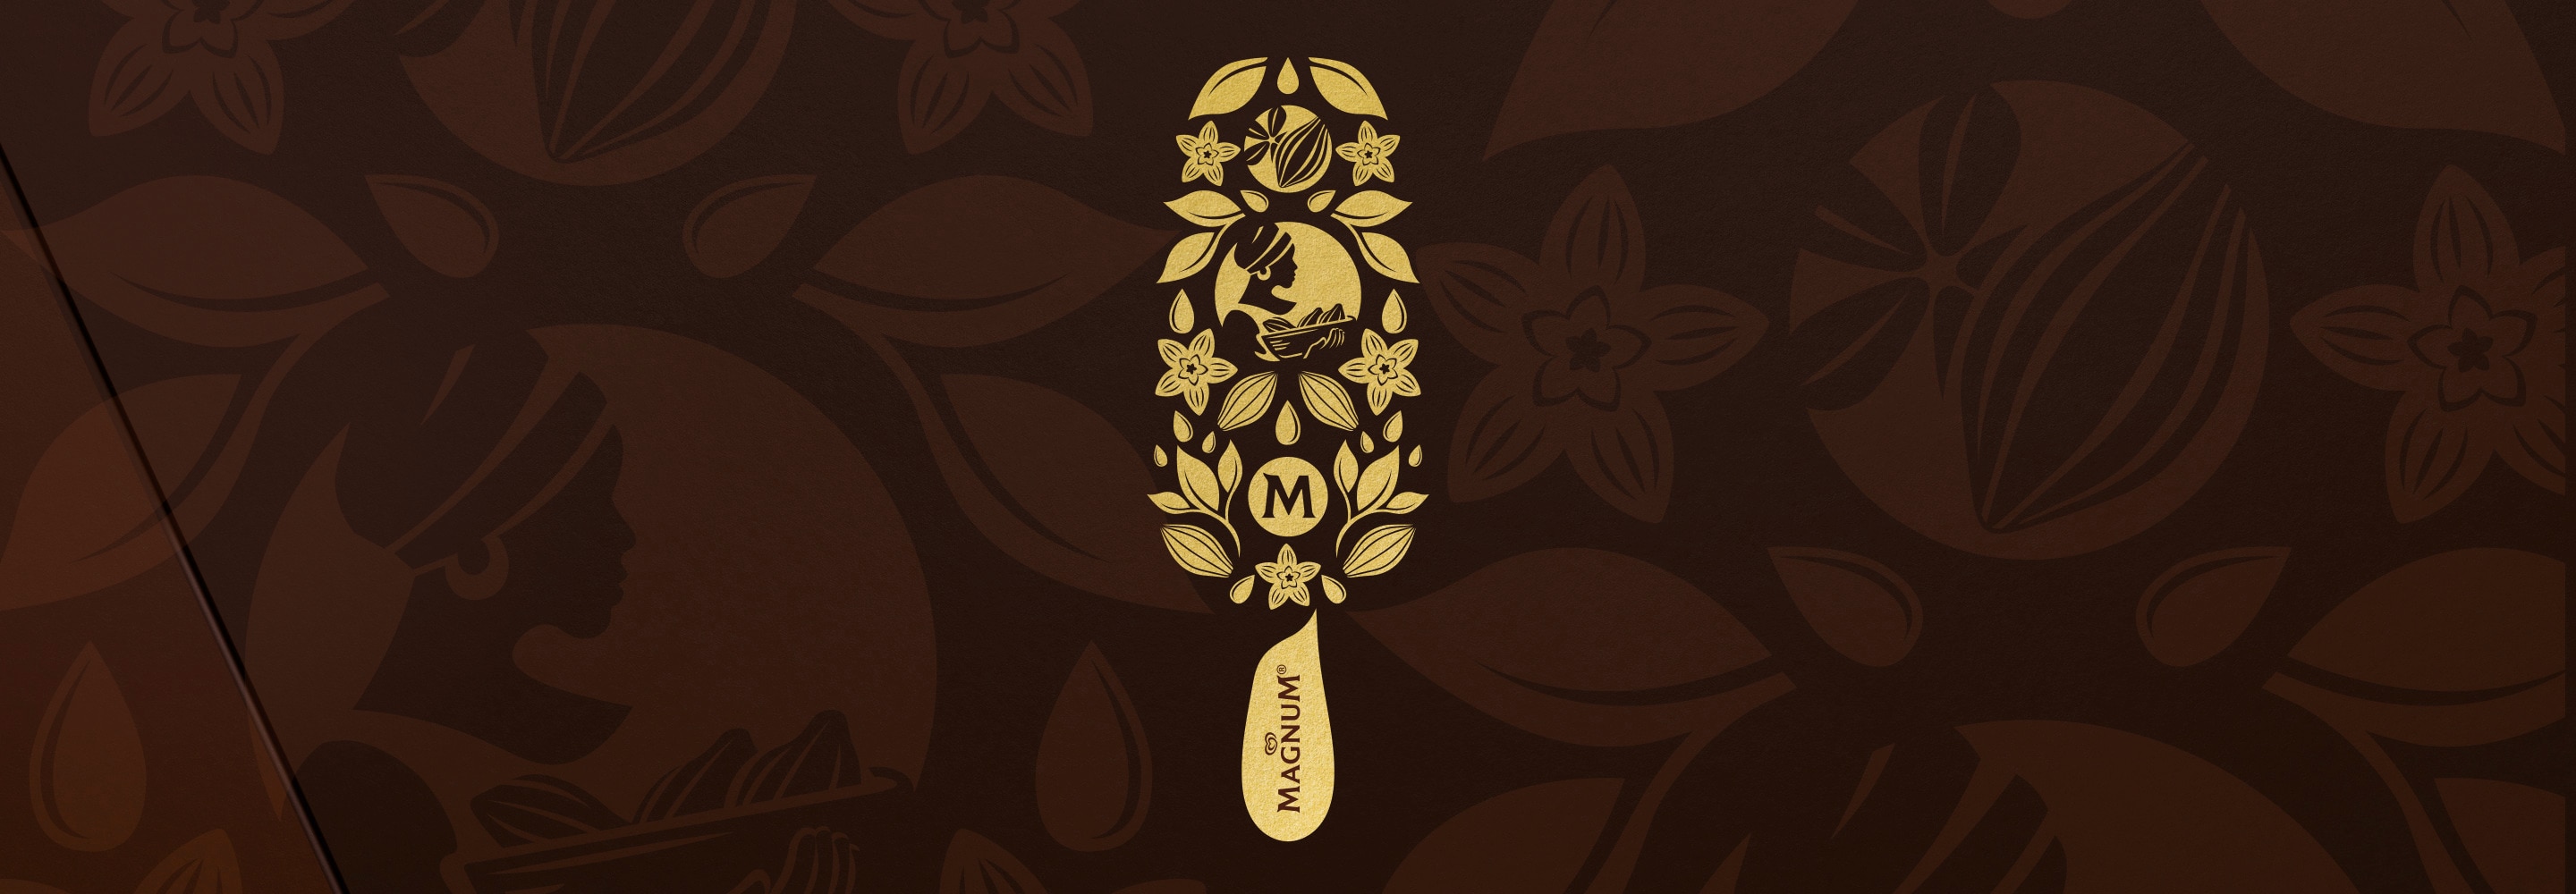 Goldene Magnum Eis Illustration auf braunem Hintergrund mit Vanilleblüten, Kakaofrüchten, Blättern und einer afrikanischen Frau mit Kopftuch, die einen Weidenkorb mit Kakaofrüchten trägt